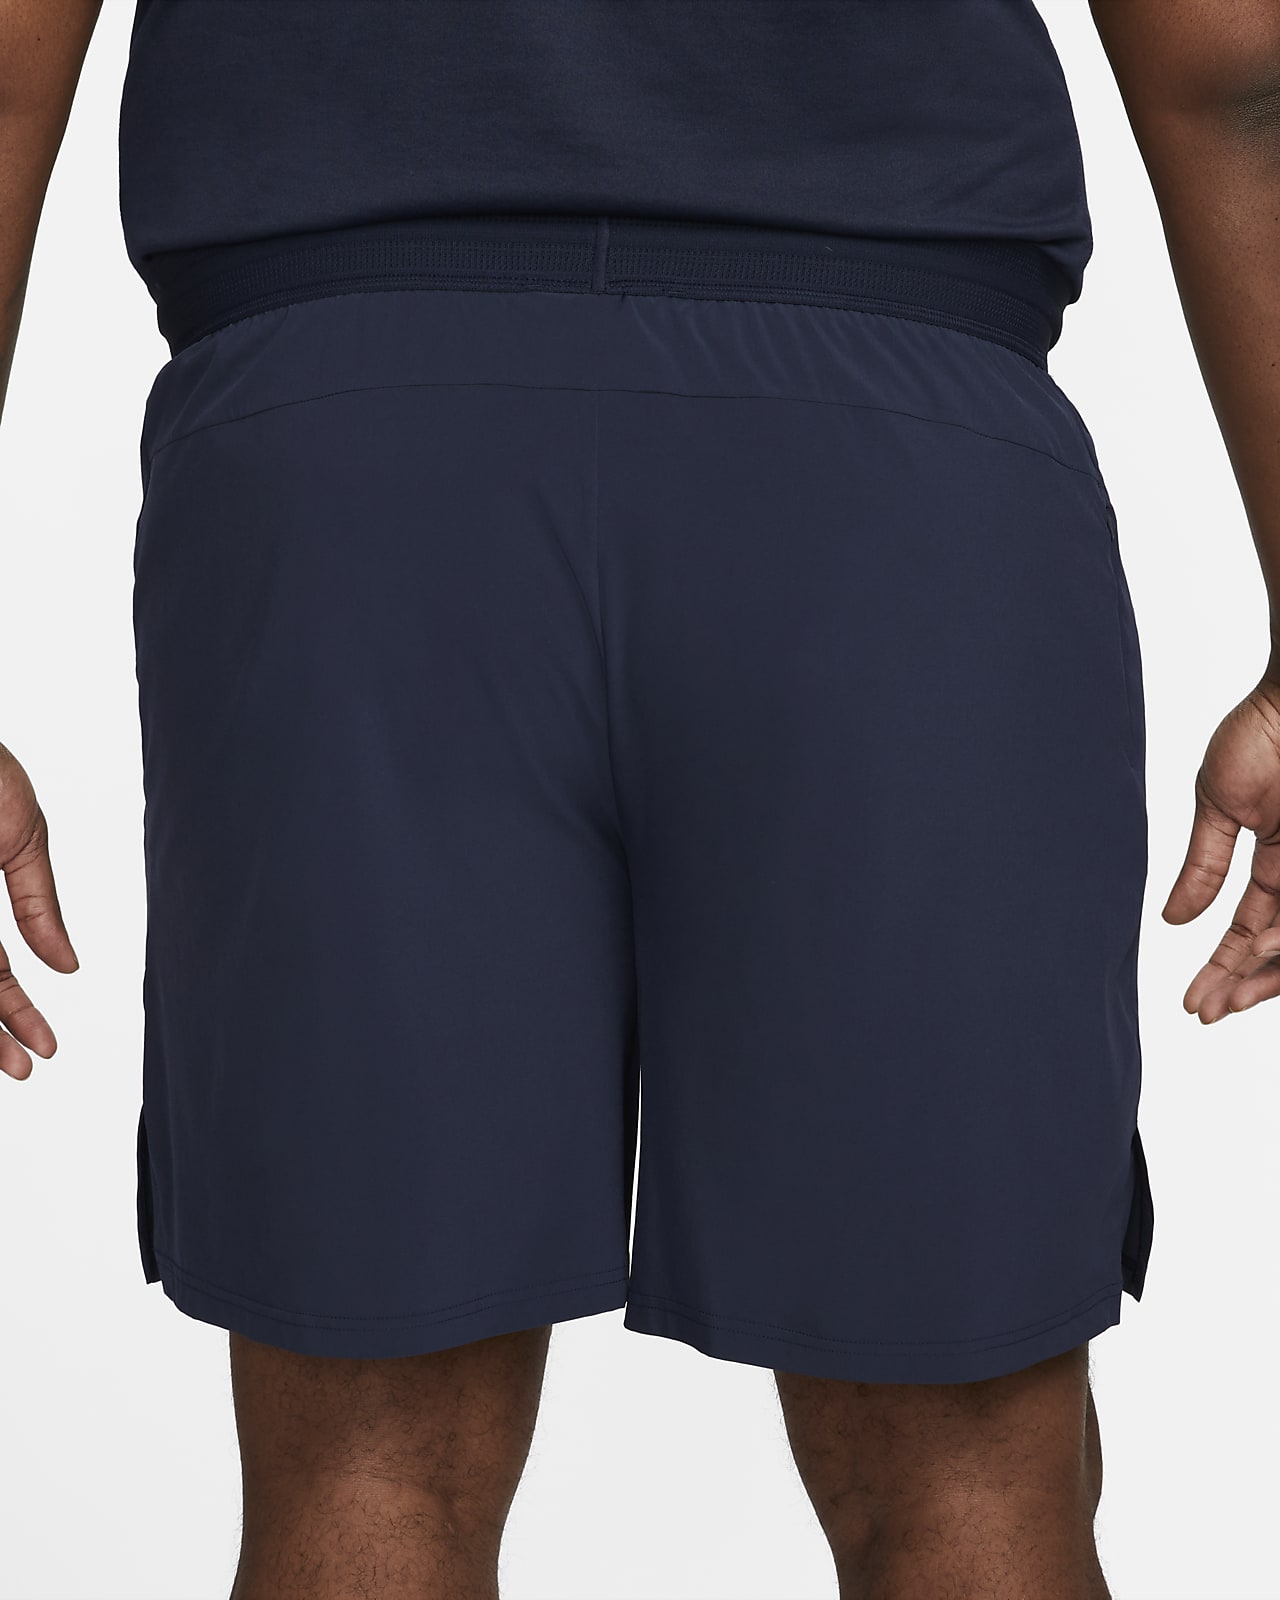 Nike Pro Dri-FIT Vent Max Men's 8" Training Shorts. Nike.com